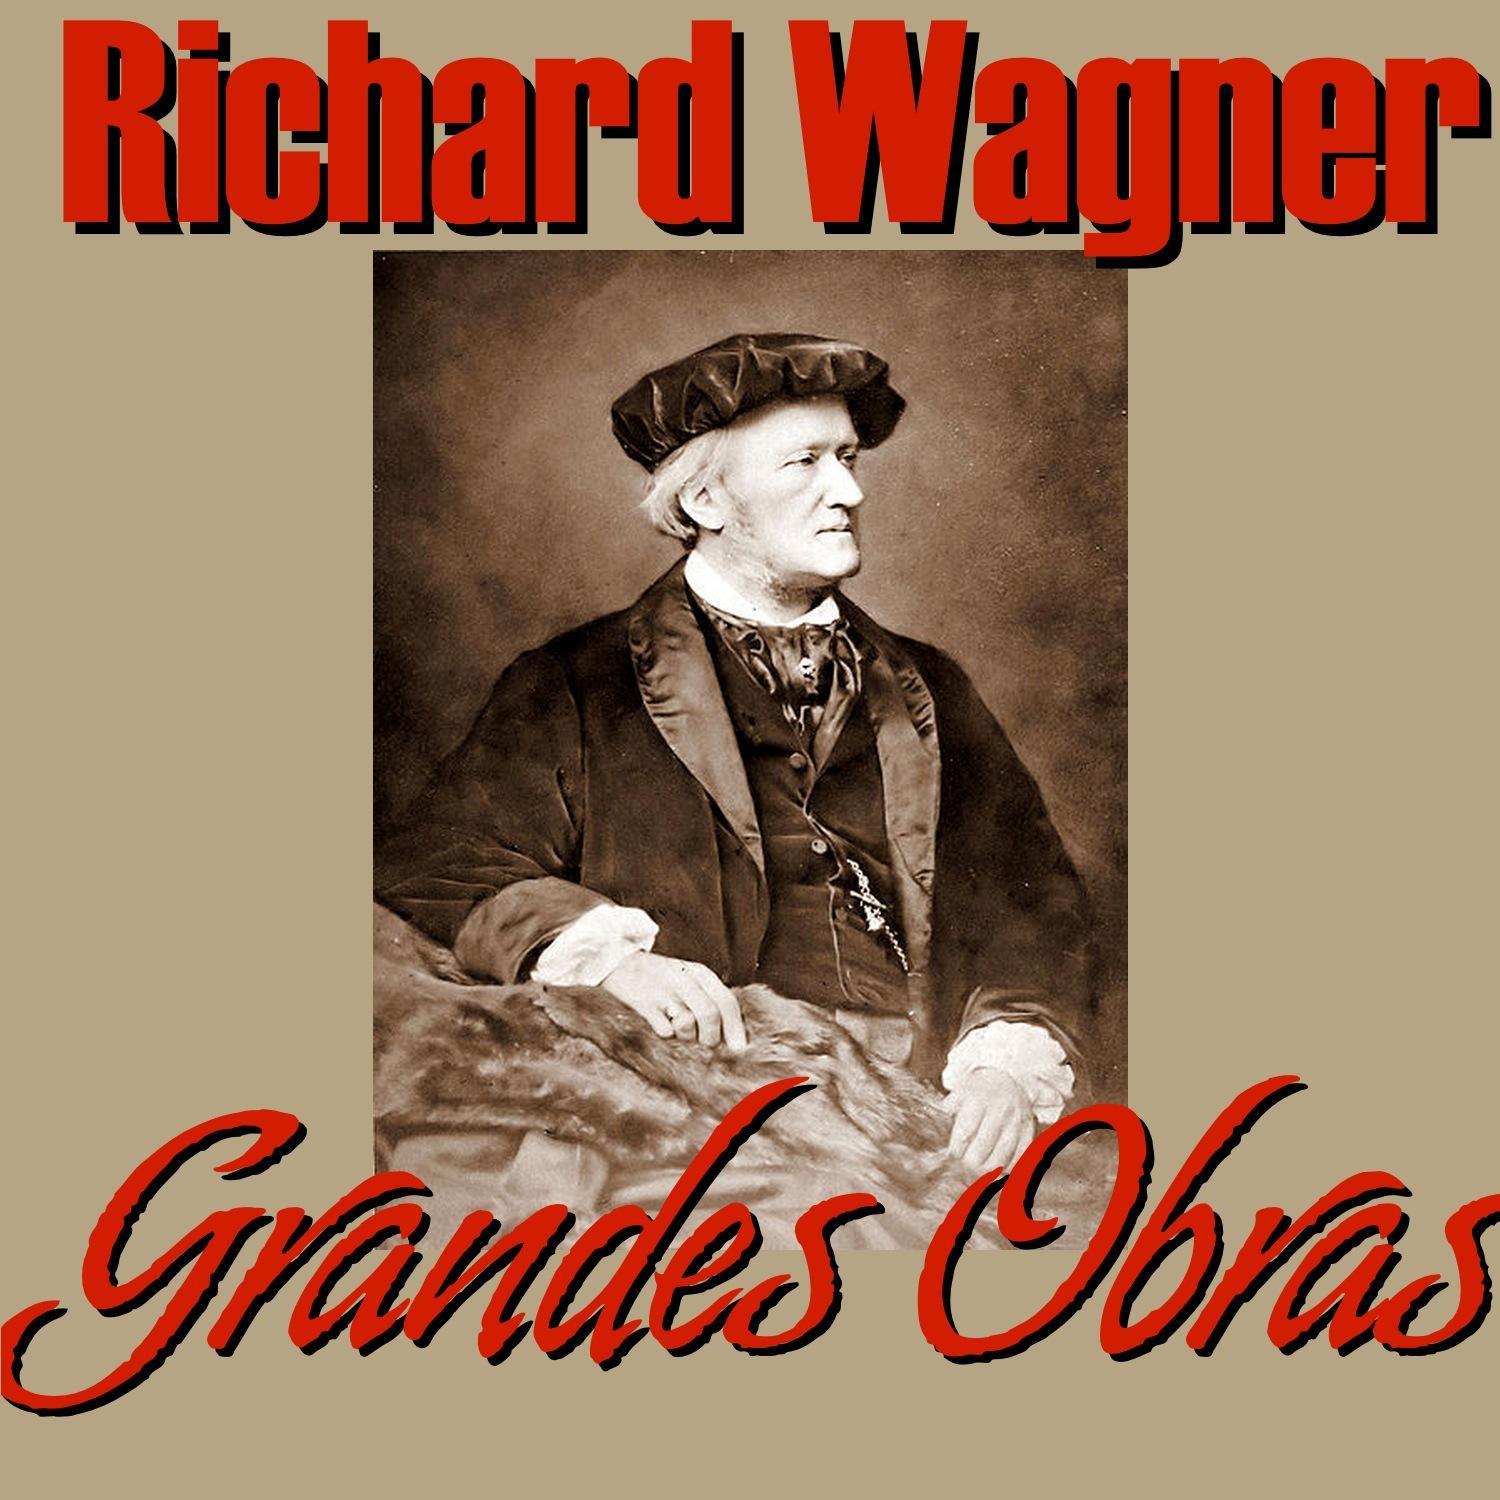 Richard Wagner Grandes Obras专辑